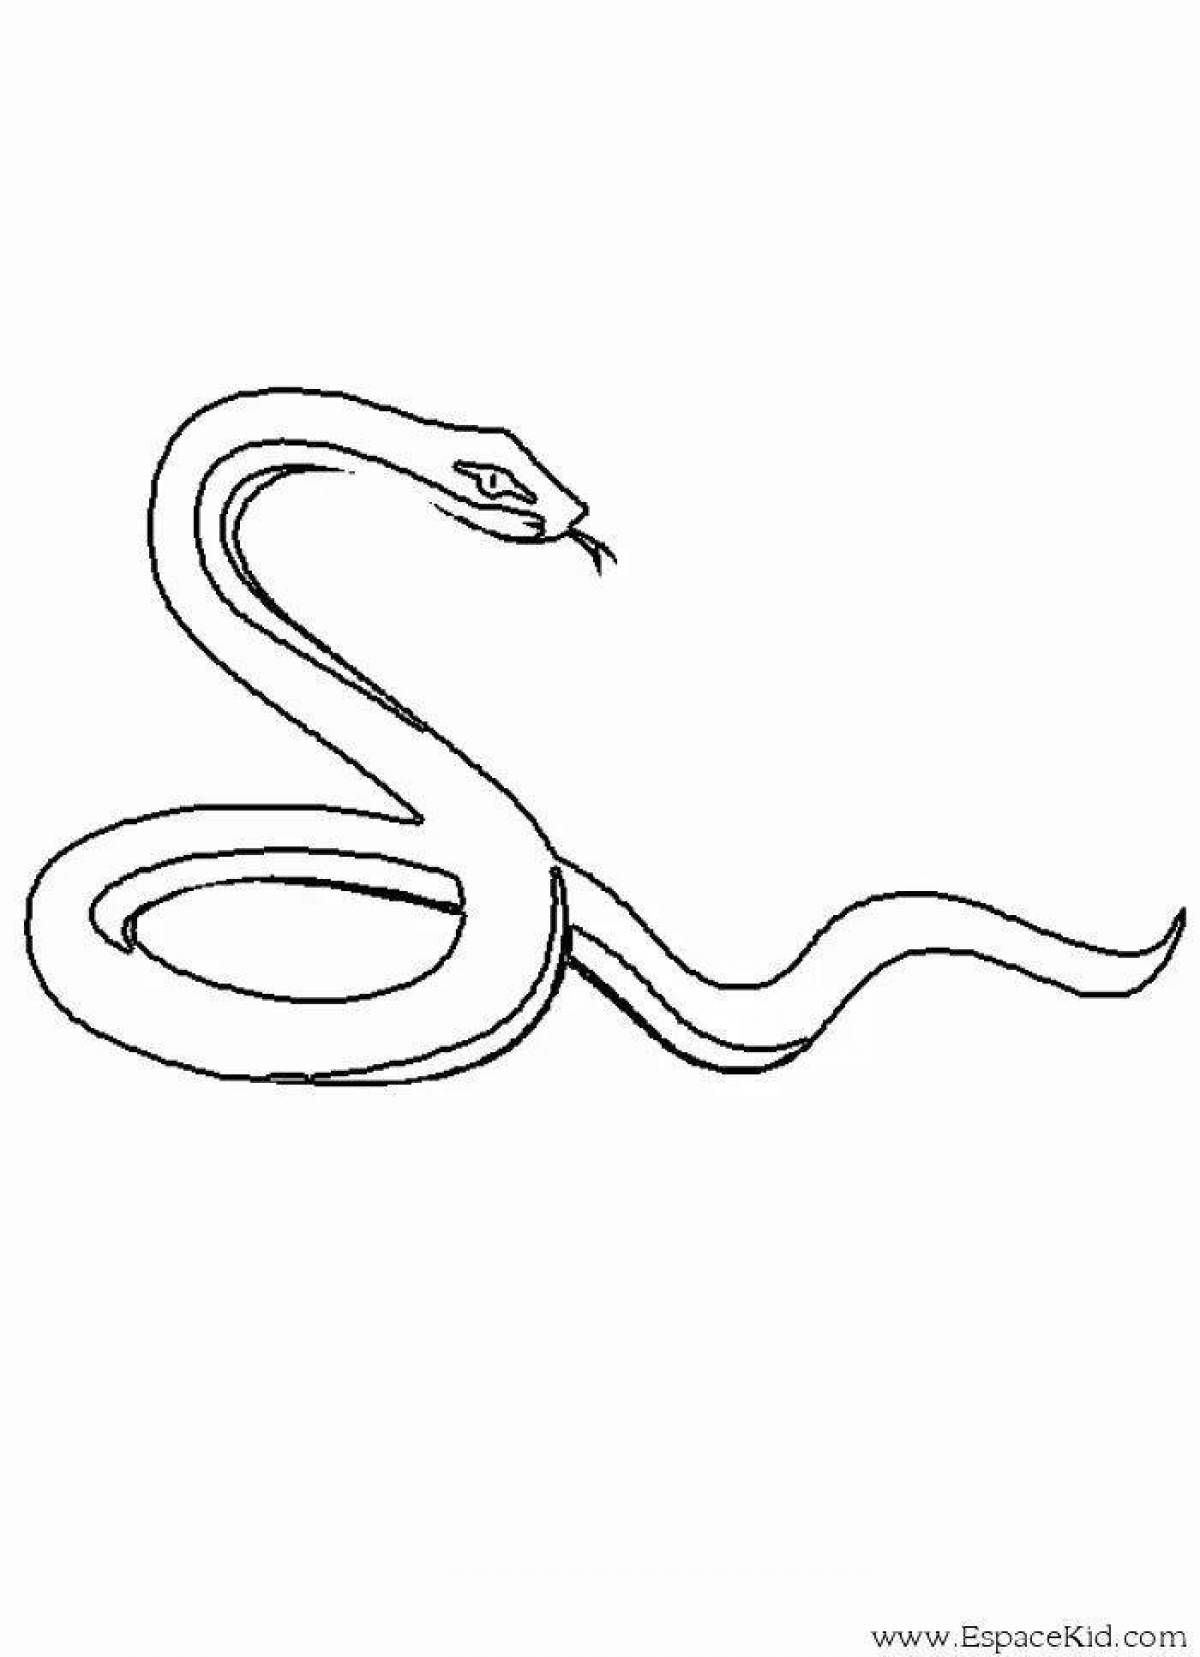 Легкий рисунок змей. Гадюка уж медянка. Степная гадюка медянка. Змея медянка раскраска. Раскраска змеи для детей.